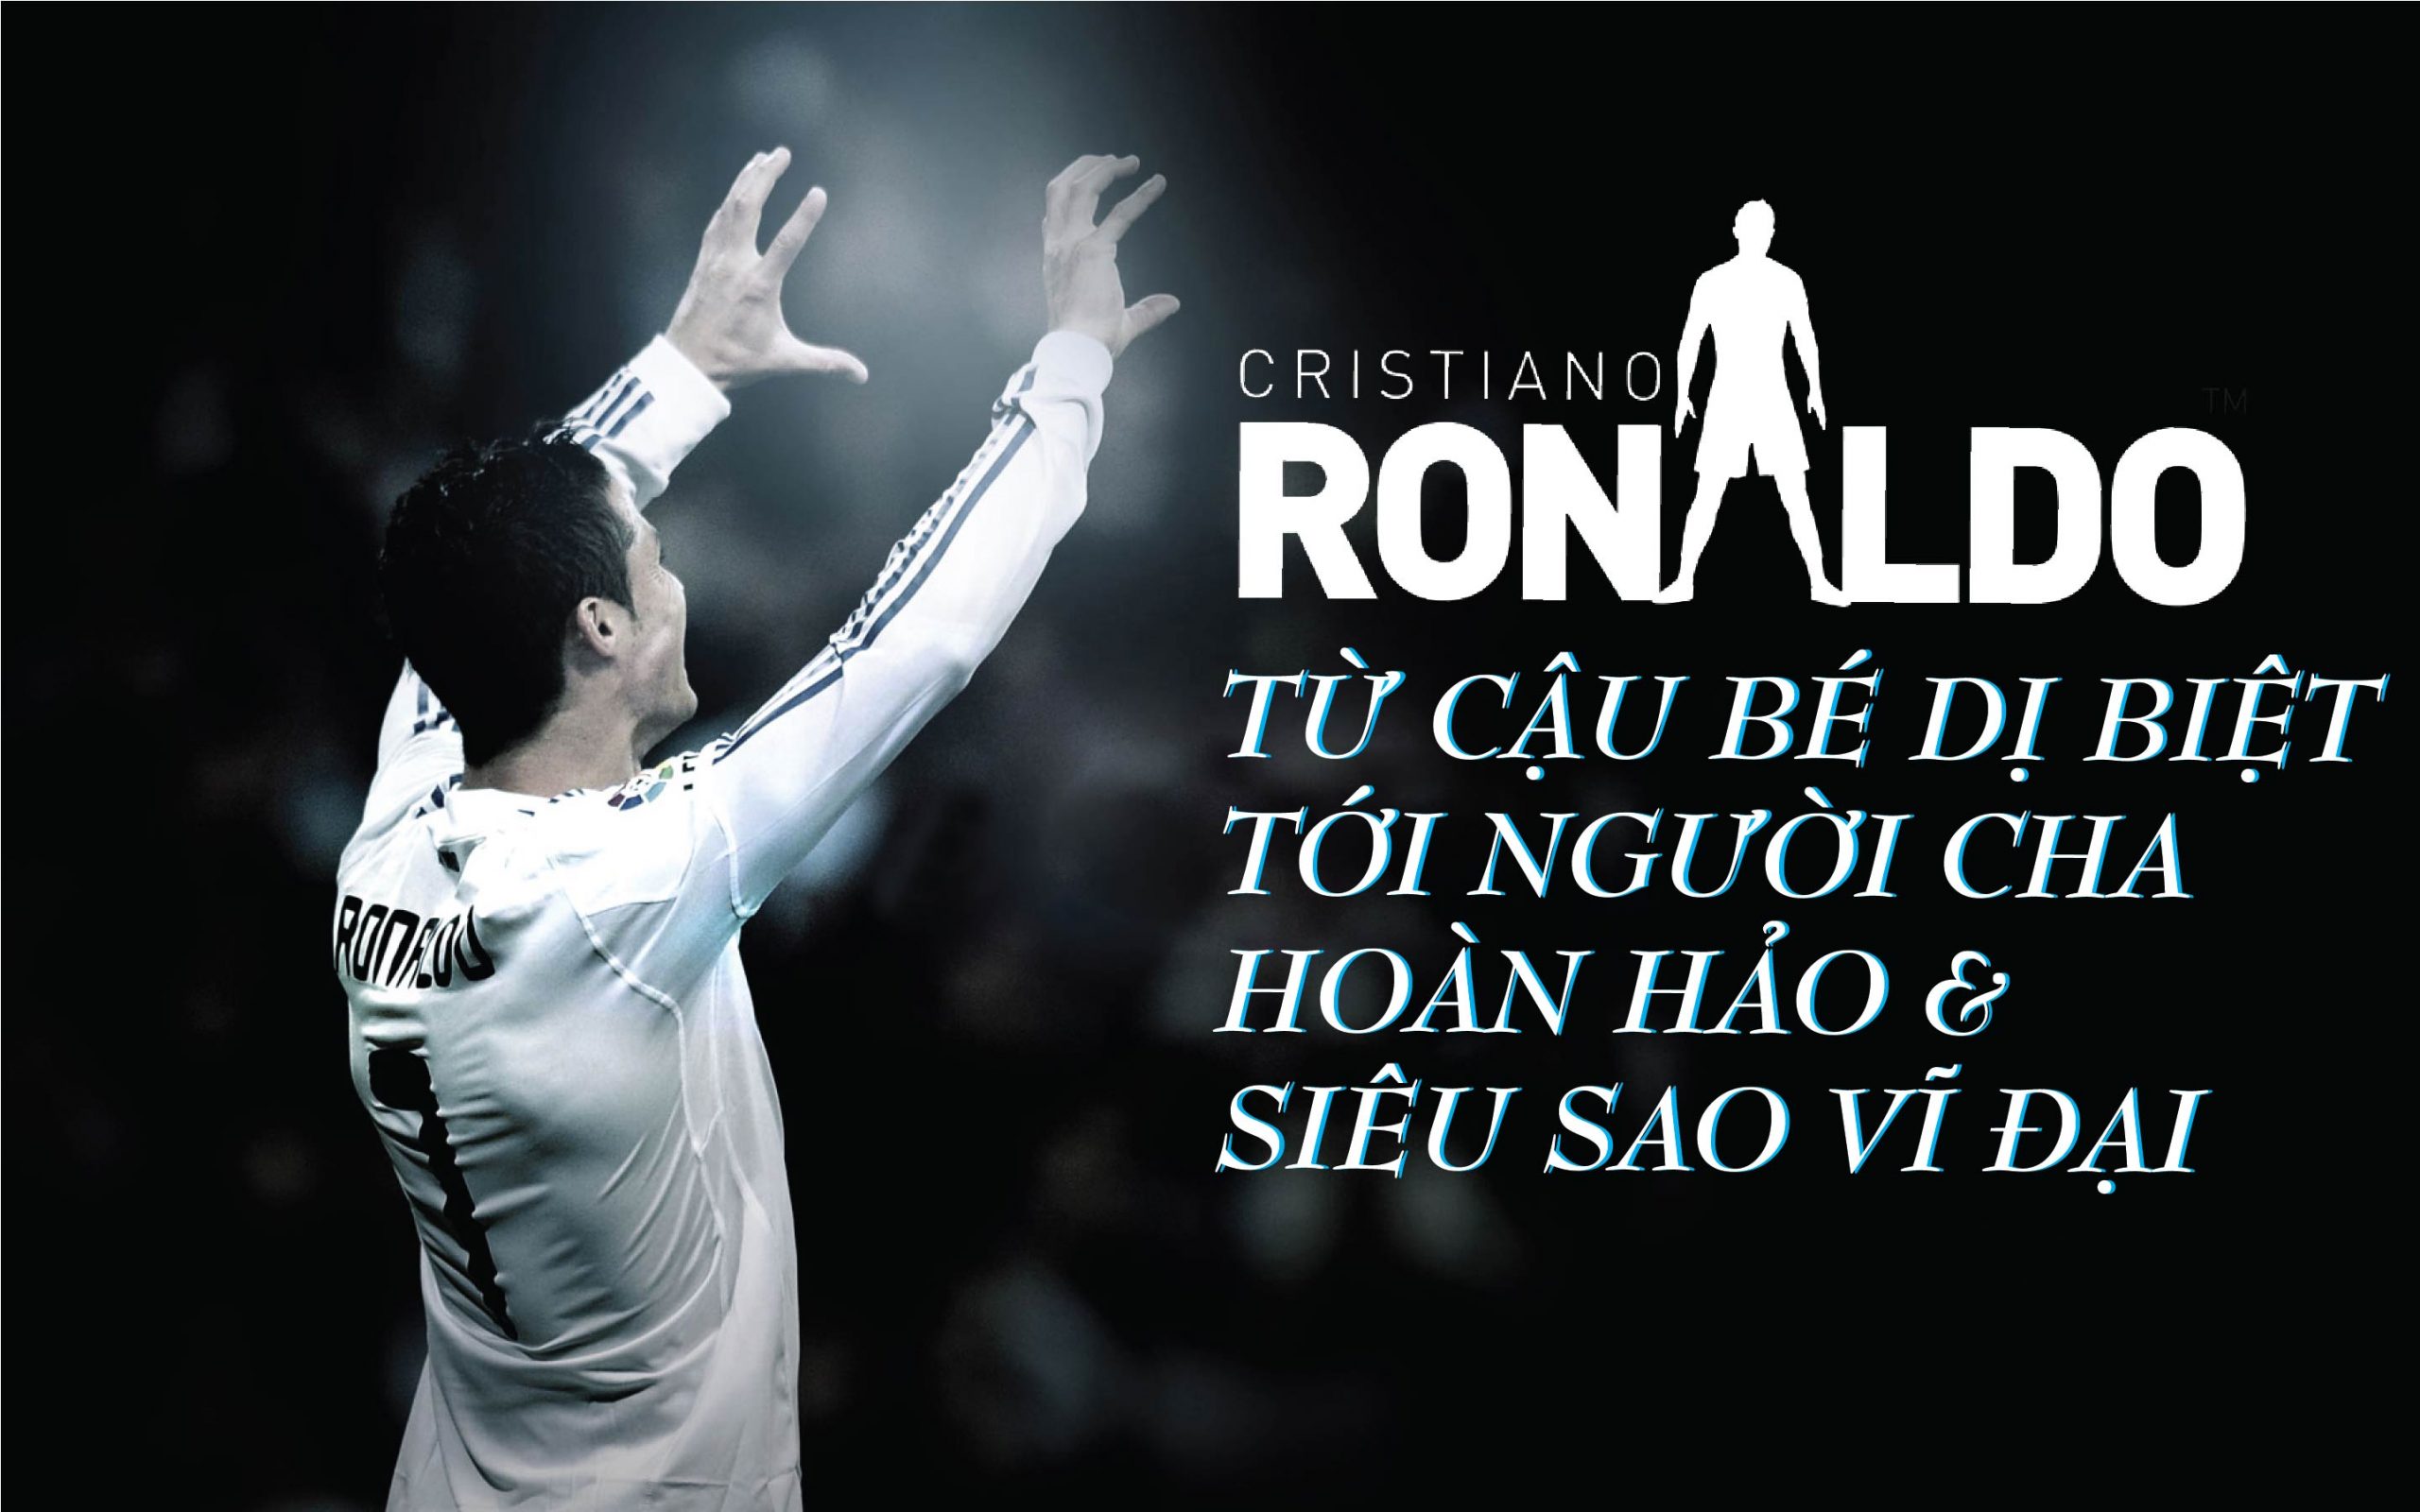 Sự hoàn hảo và khoa học của Ronaldo Cristiano